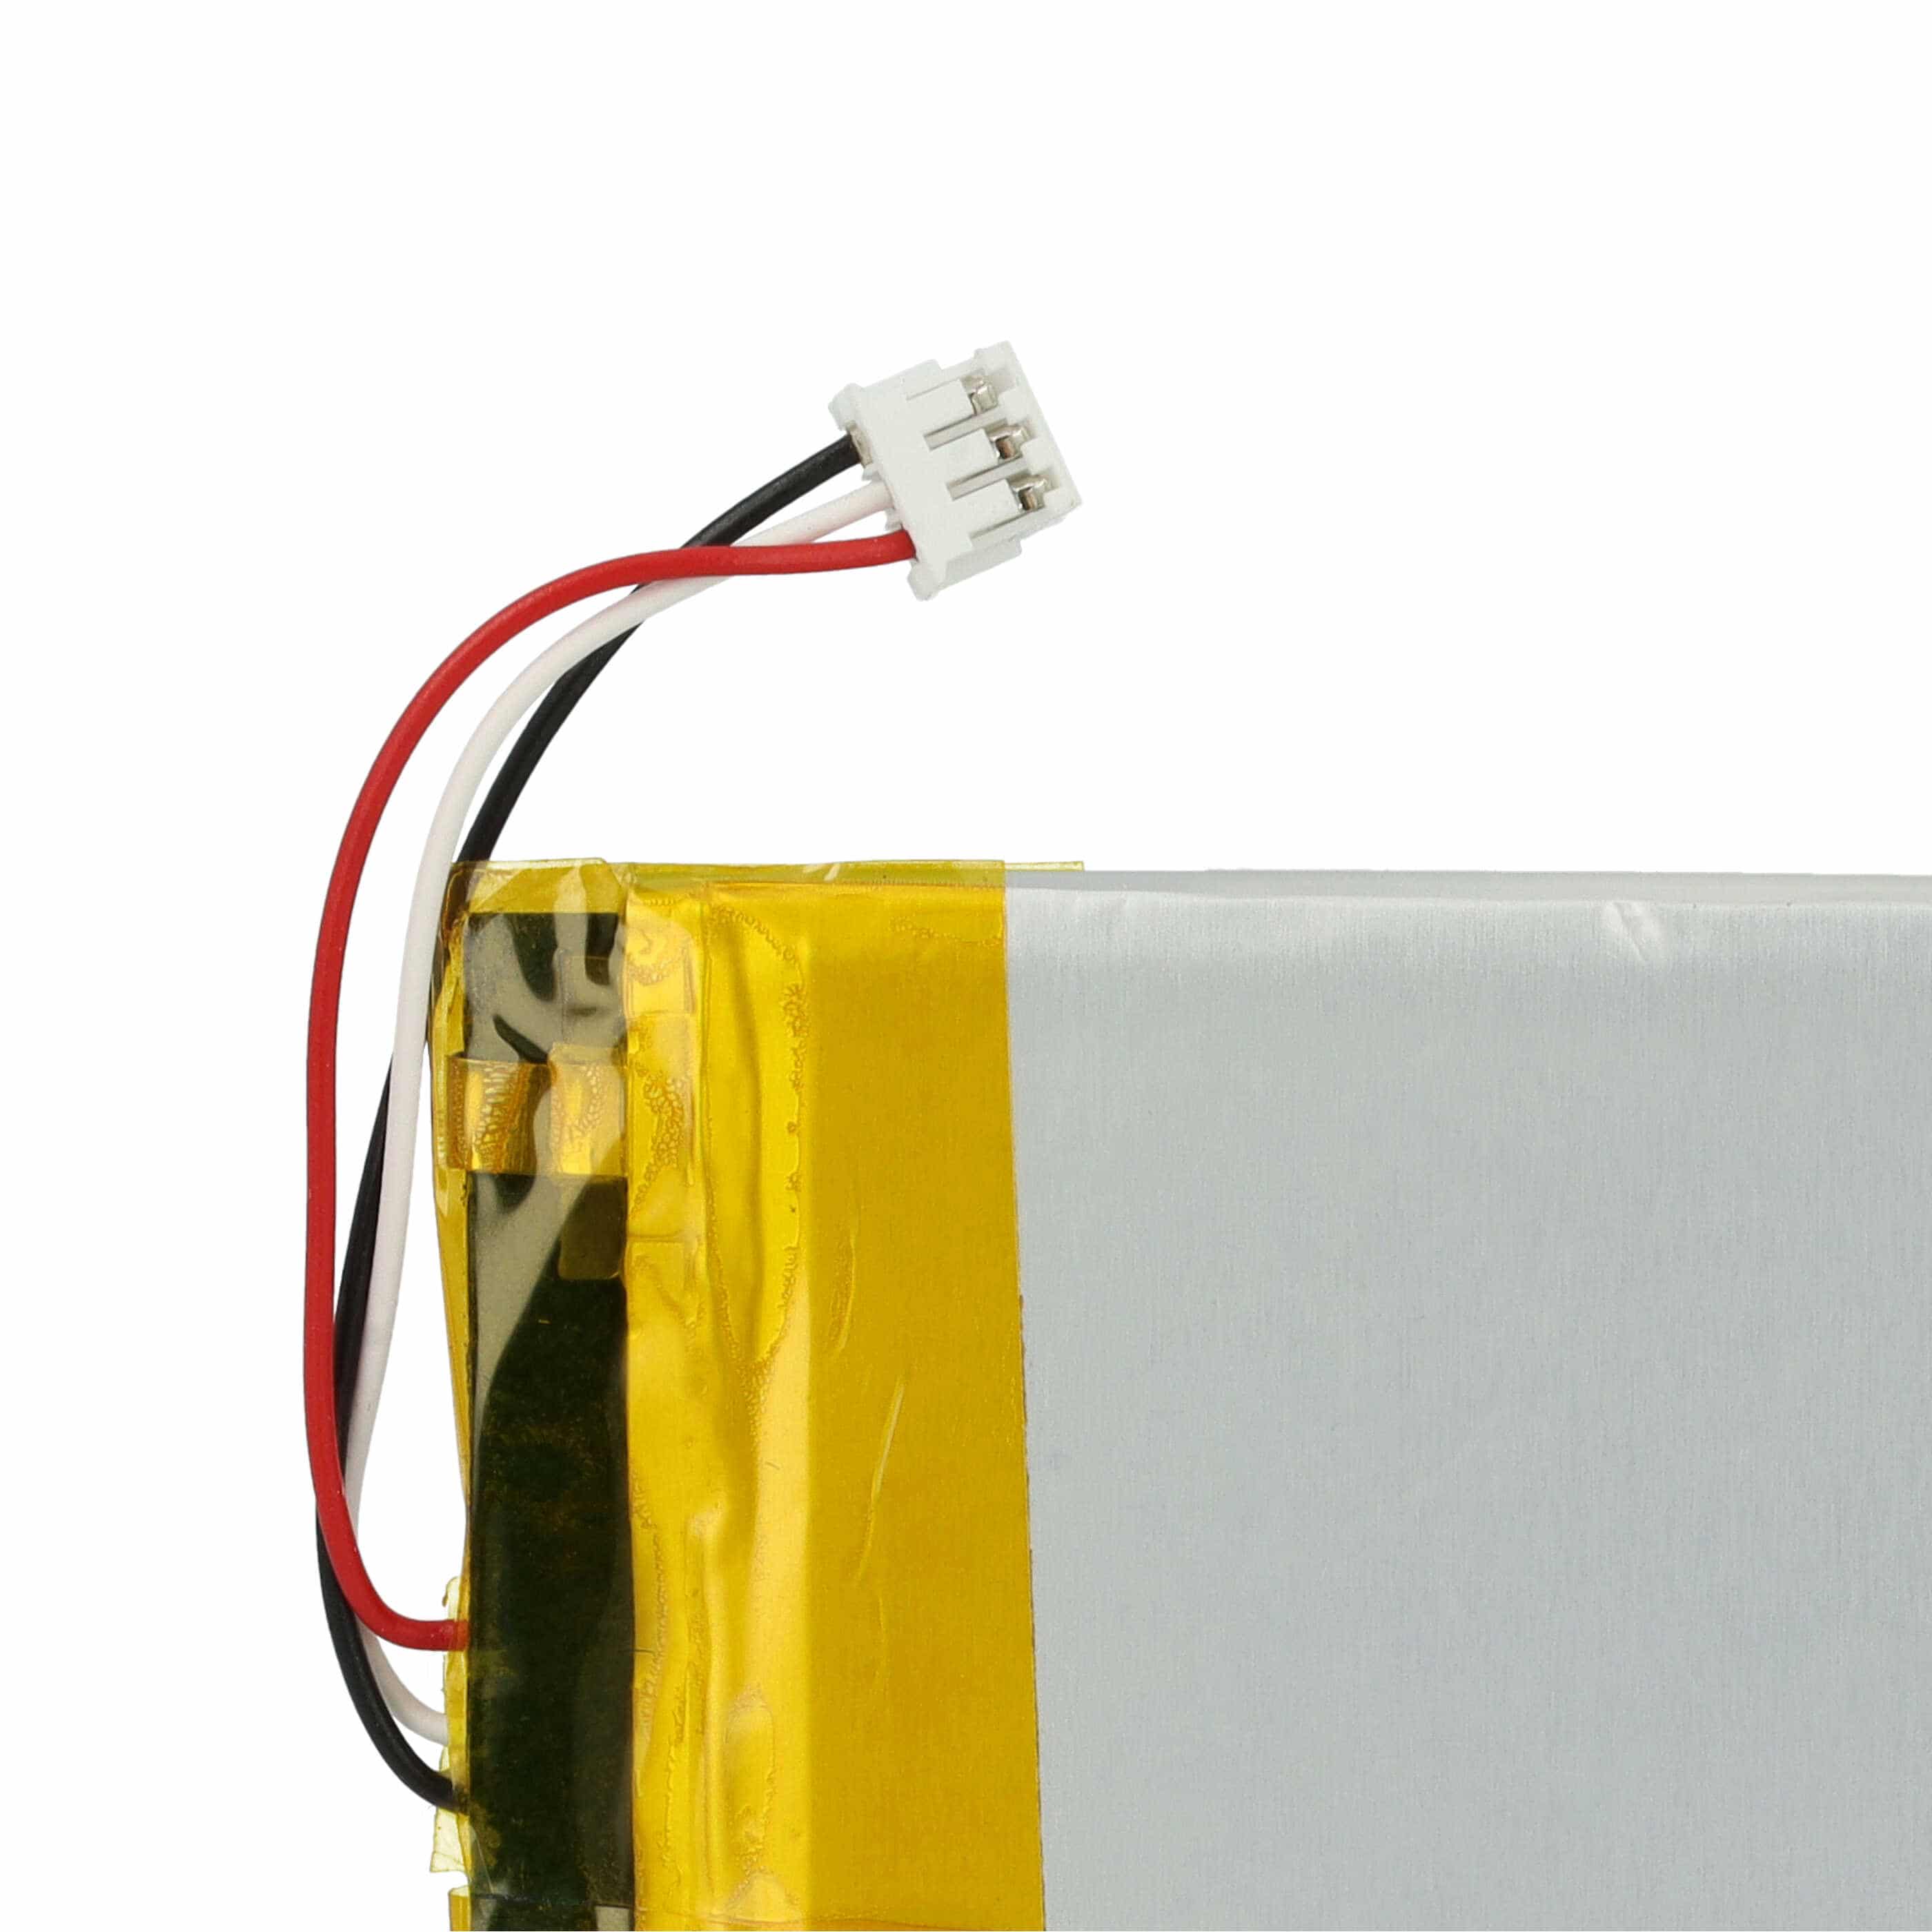 Batterie remplace Logitech 533-000152, 533-000204, AHB355085PCT-02 pour clavier - 1500mAh 3,7V Li-polymère